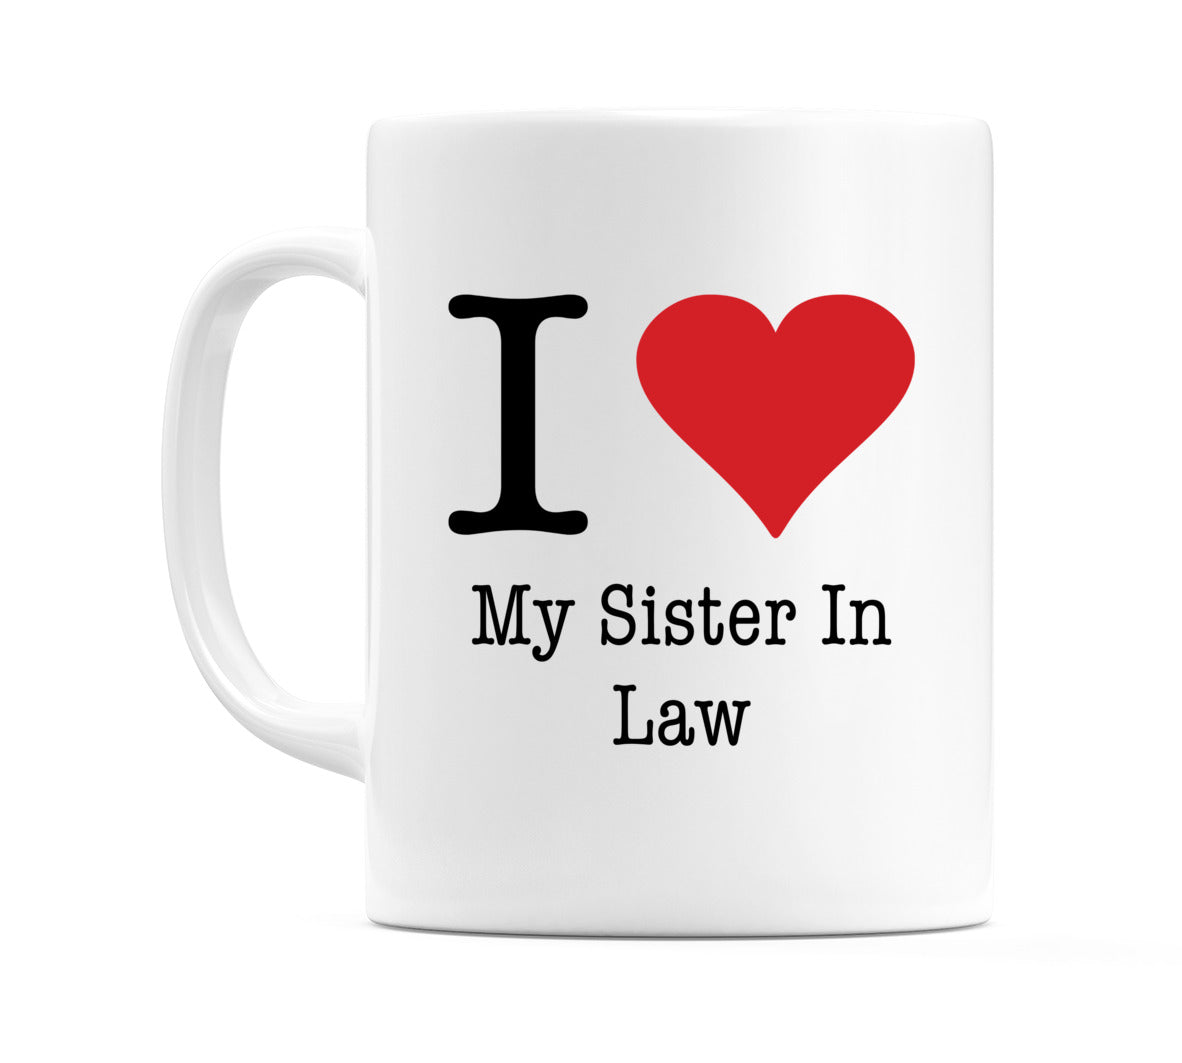 I Love My Sister In Law Mug